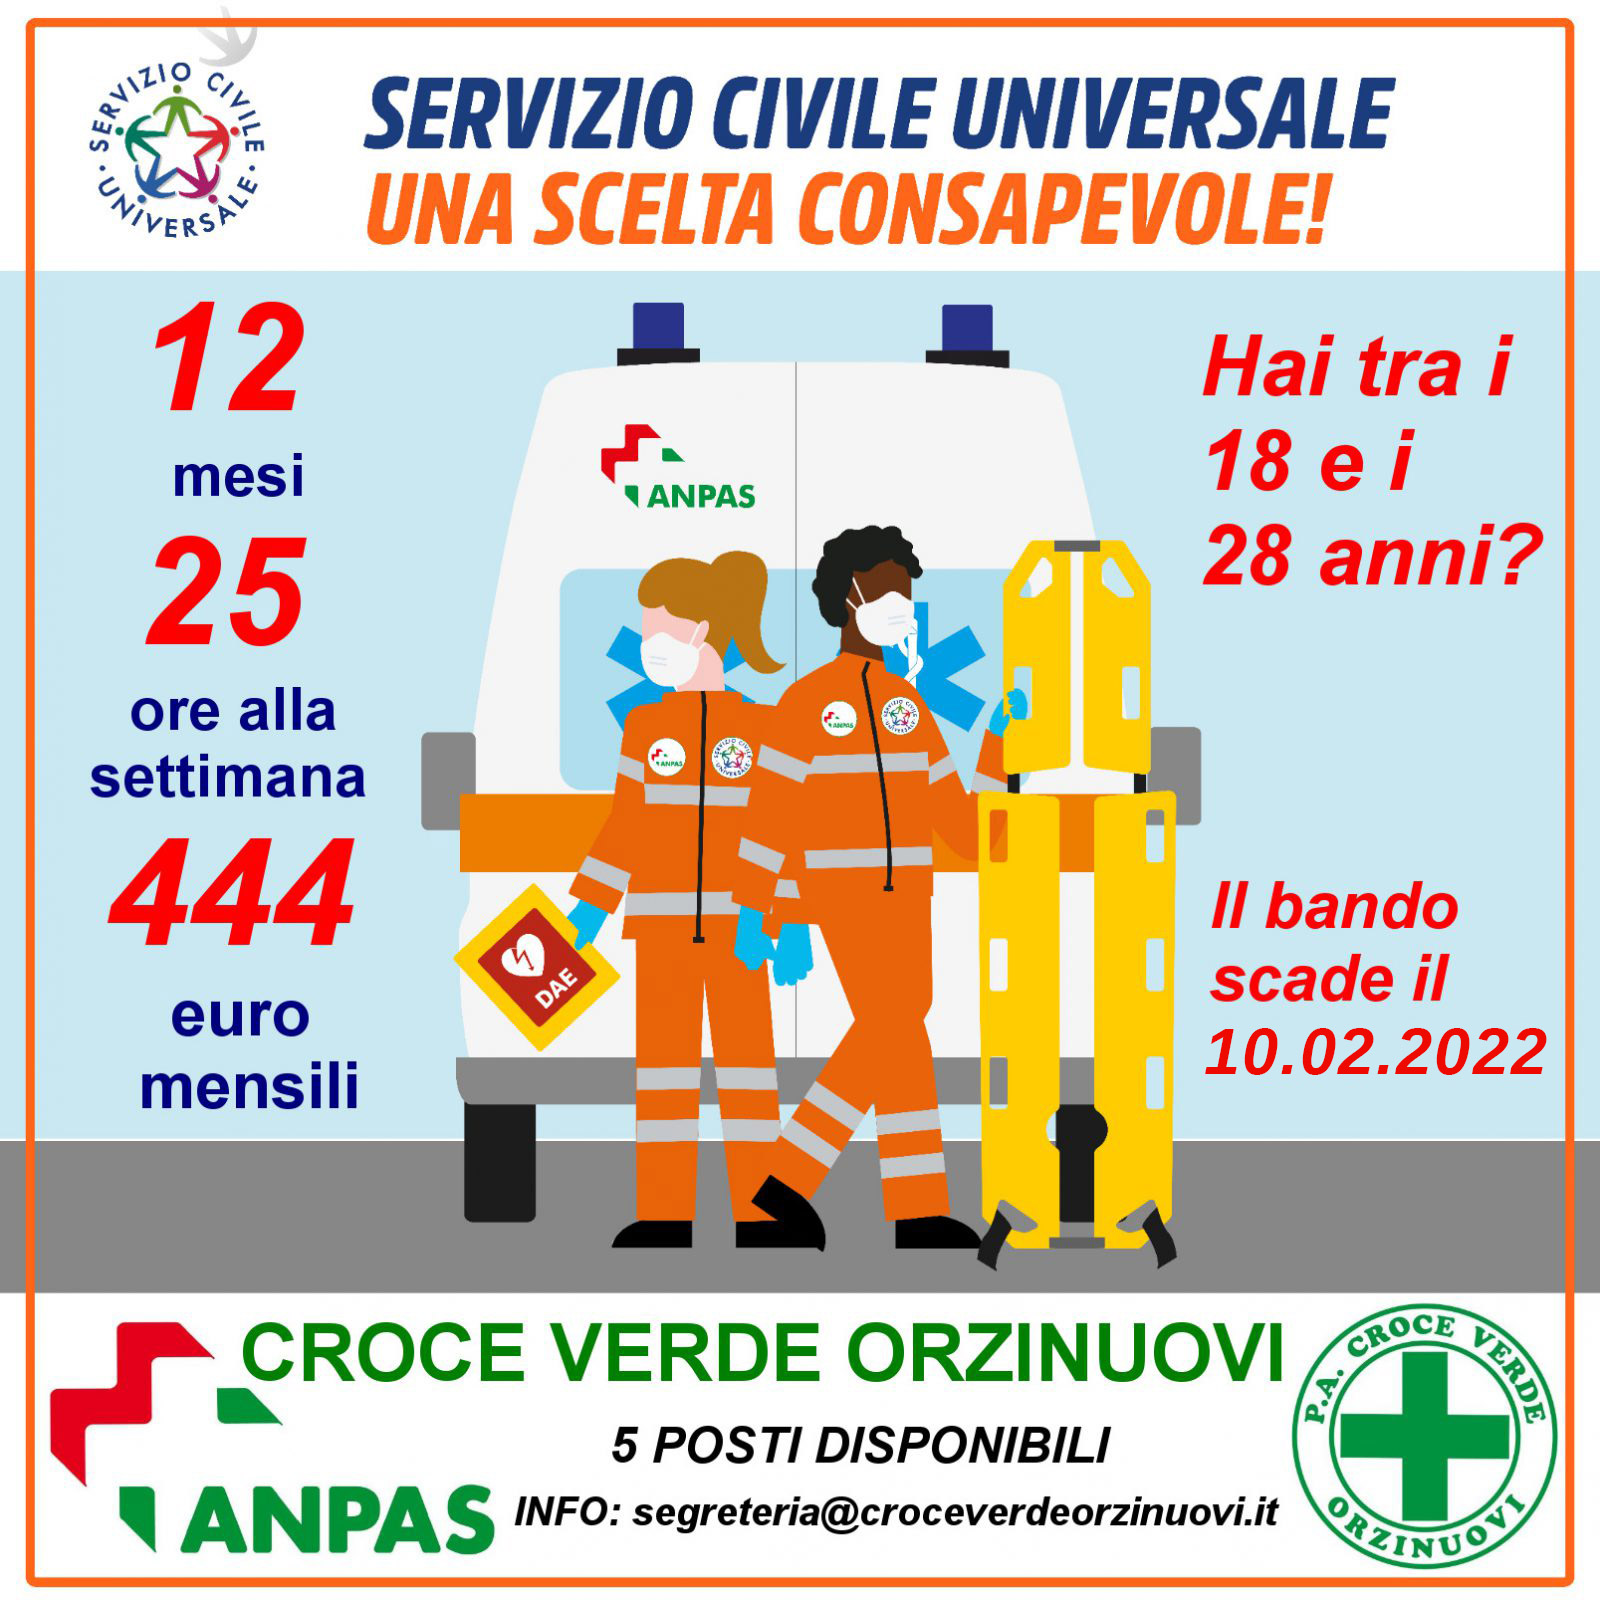 servizio-civile-2022-corretto-1600x1600-update